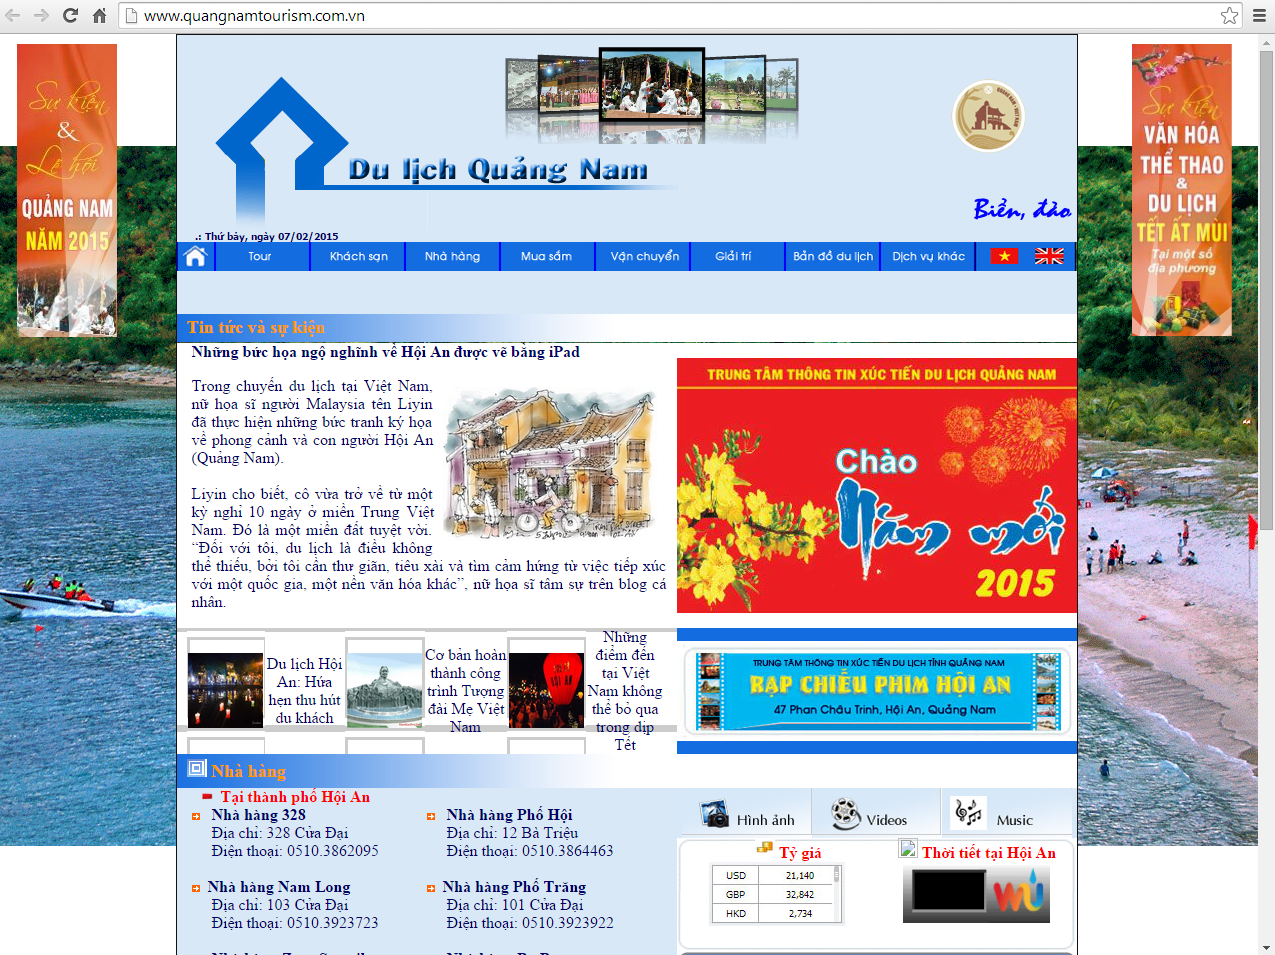 Phat trien kinh doanh voi thiet ke web tại Quang Nam hinh anh